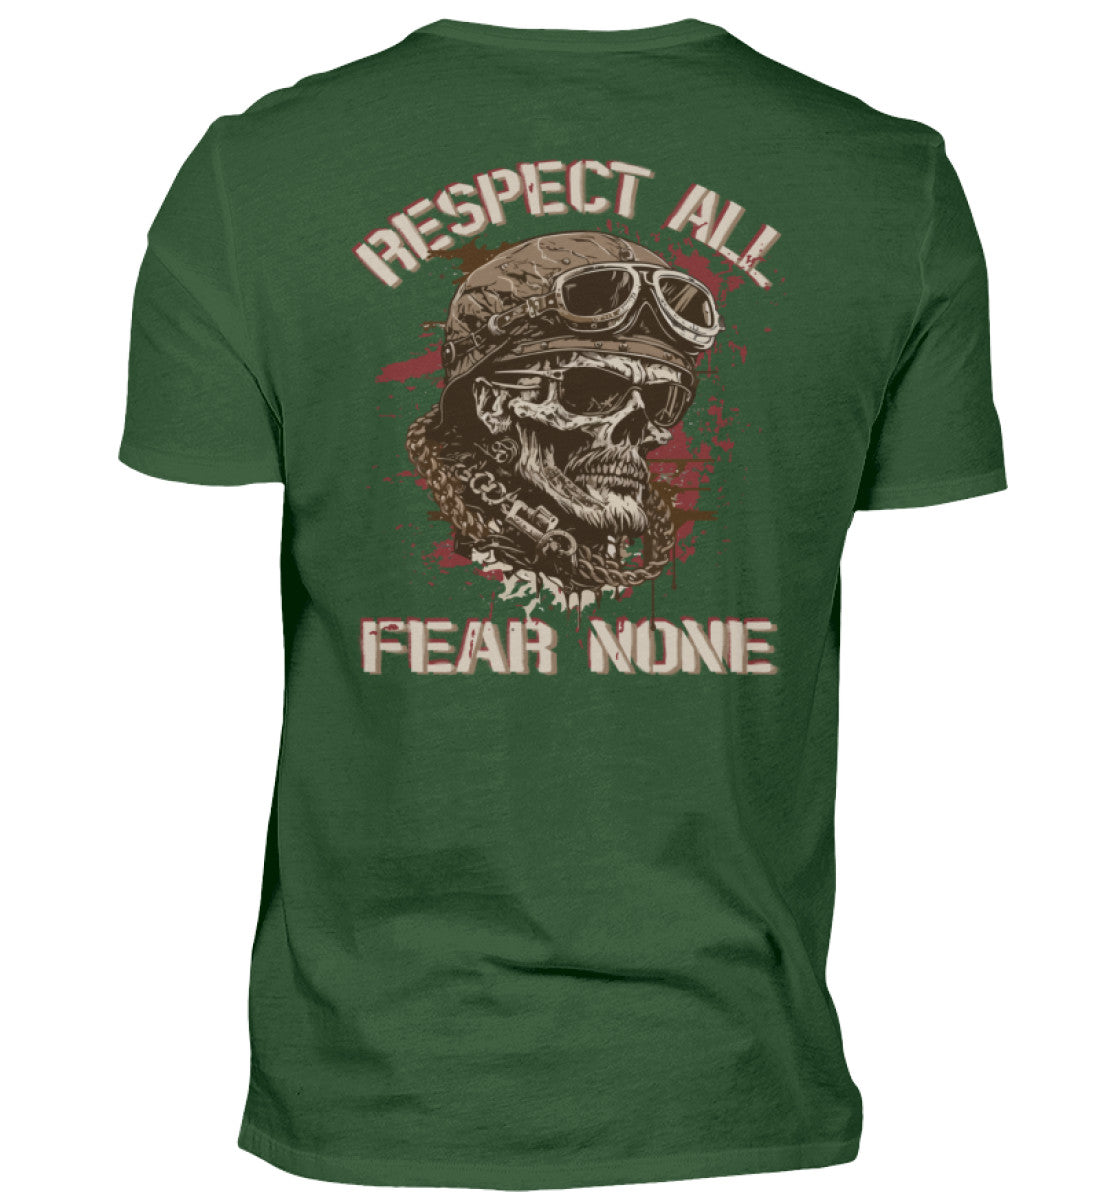 Ein Biker T-Shirt für Motorradfahrer von Wingbikers mit dem Aufdruck, Respect All - Fear None, als Back Print, in dunkelgrün.